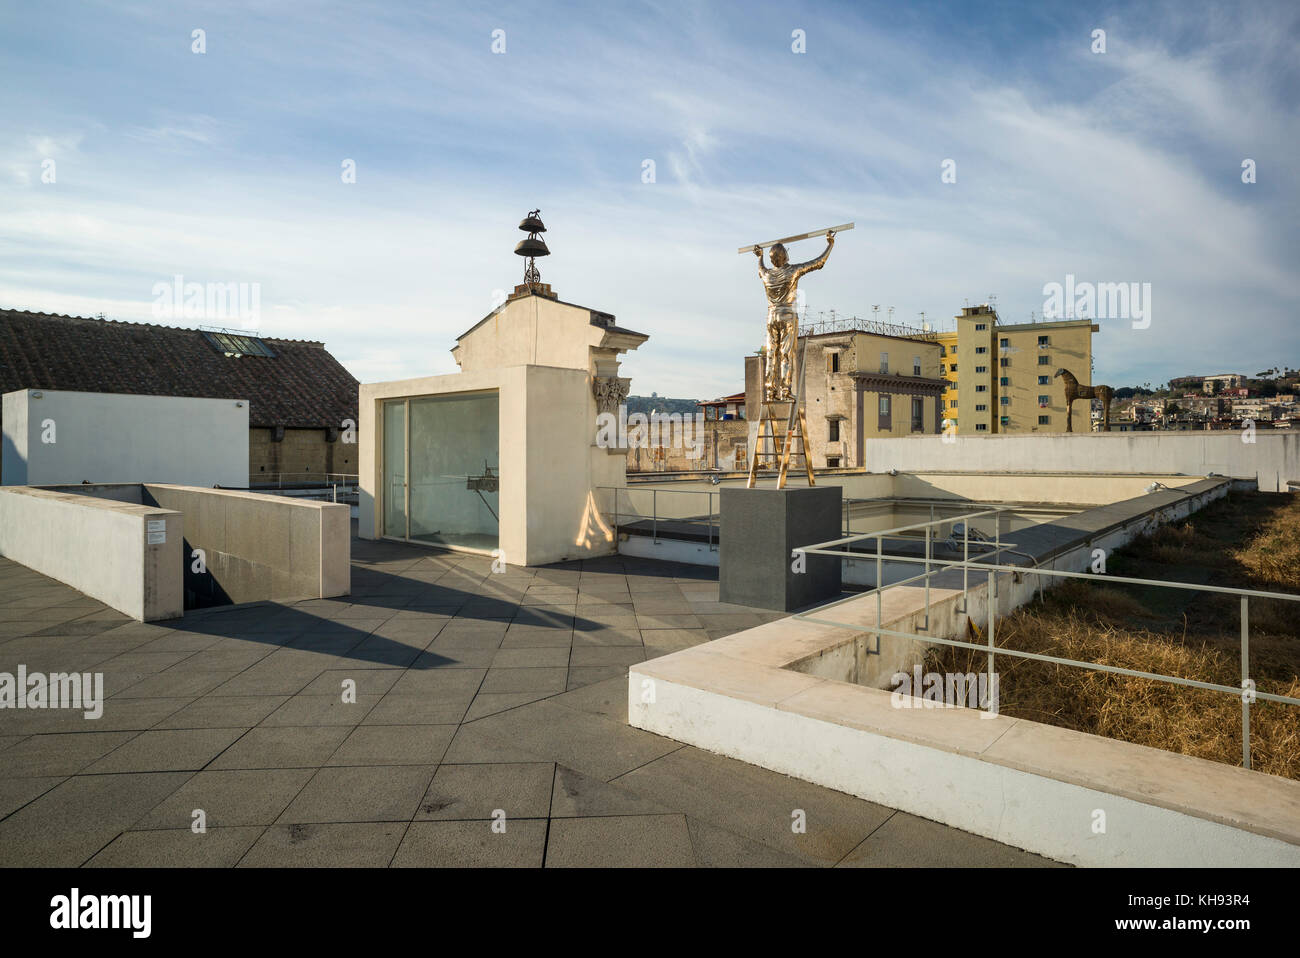 Naples. L'Italie. MADRE Museo d'Arte Contemporanea Donnaregina, musée d'art contemporain, terrasse sur le toit avec la sculpture l'homme mesurant les nuages, par Banque D'Images